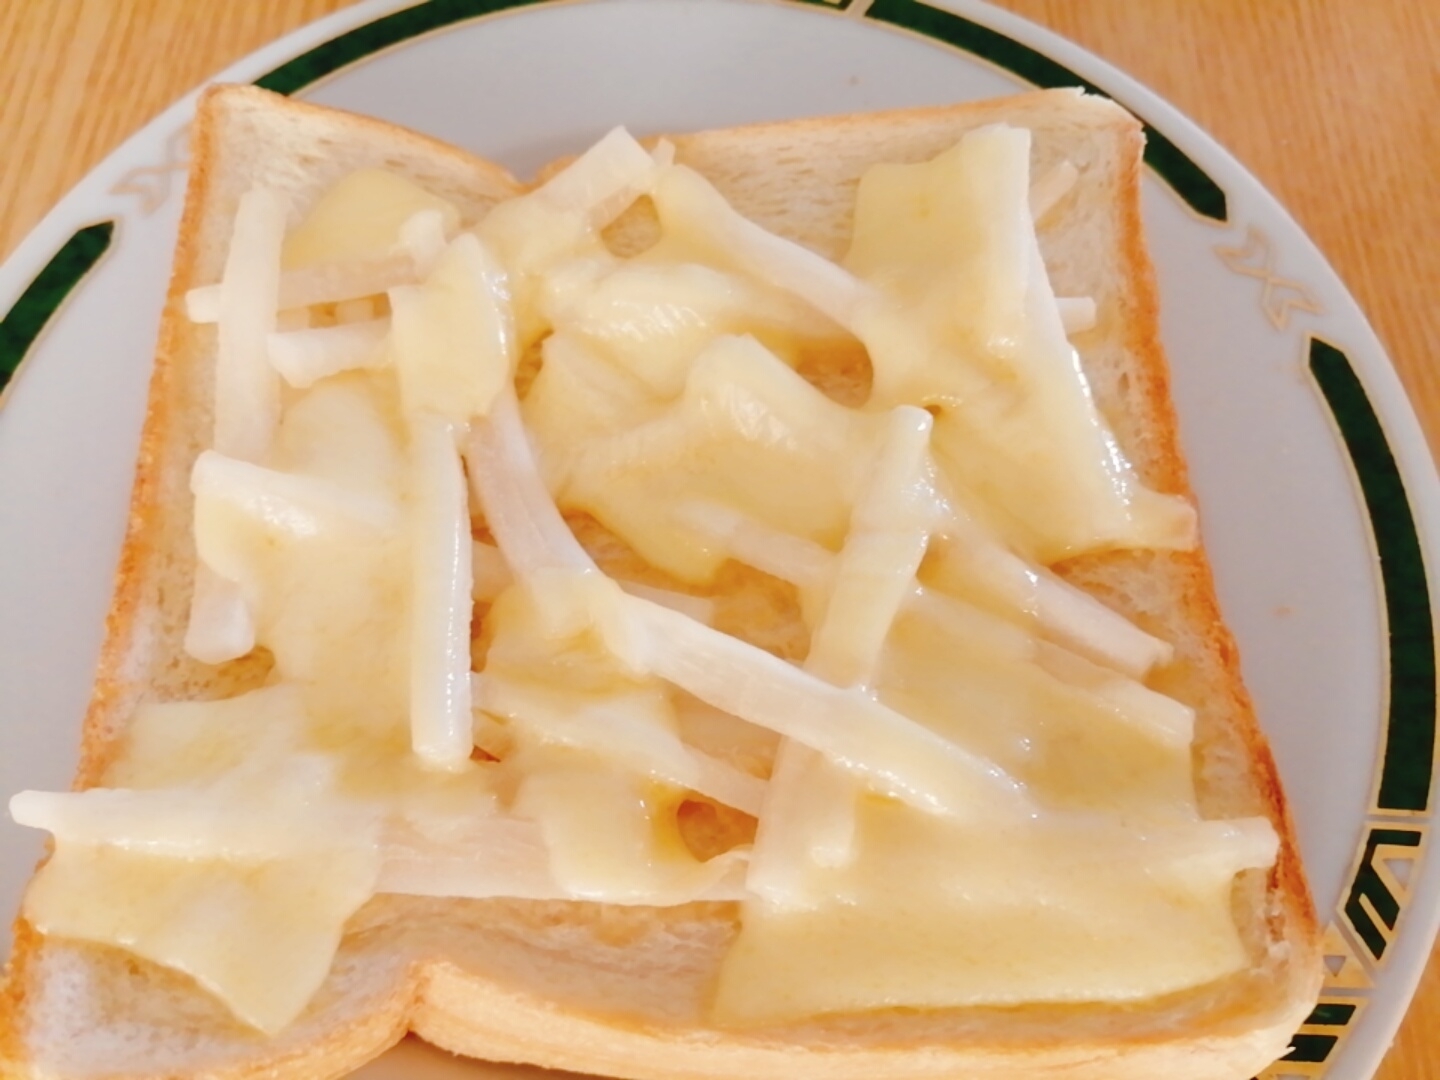 大根とチーズのトースト